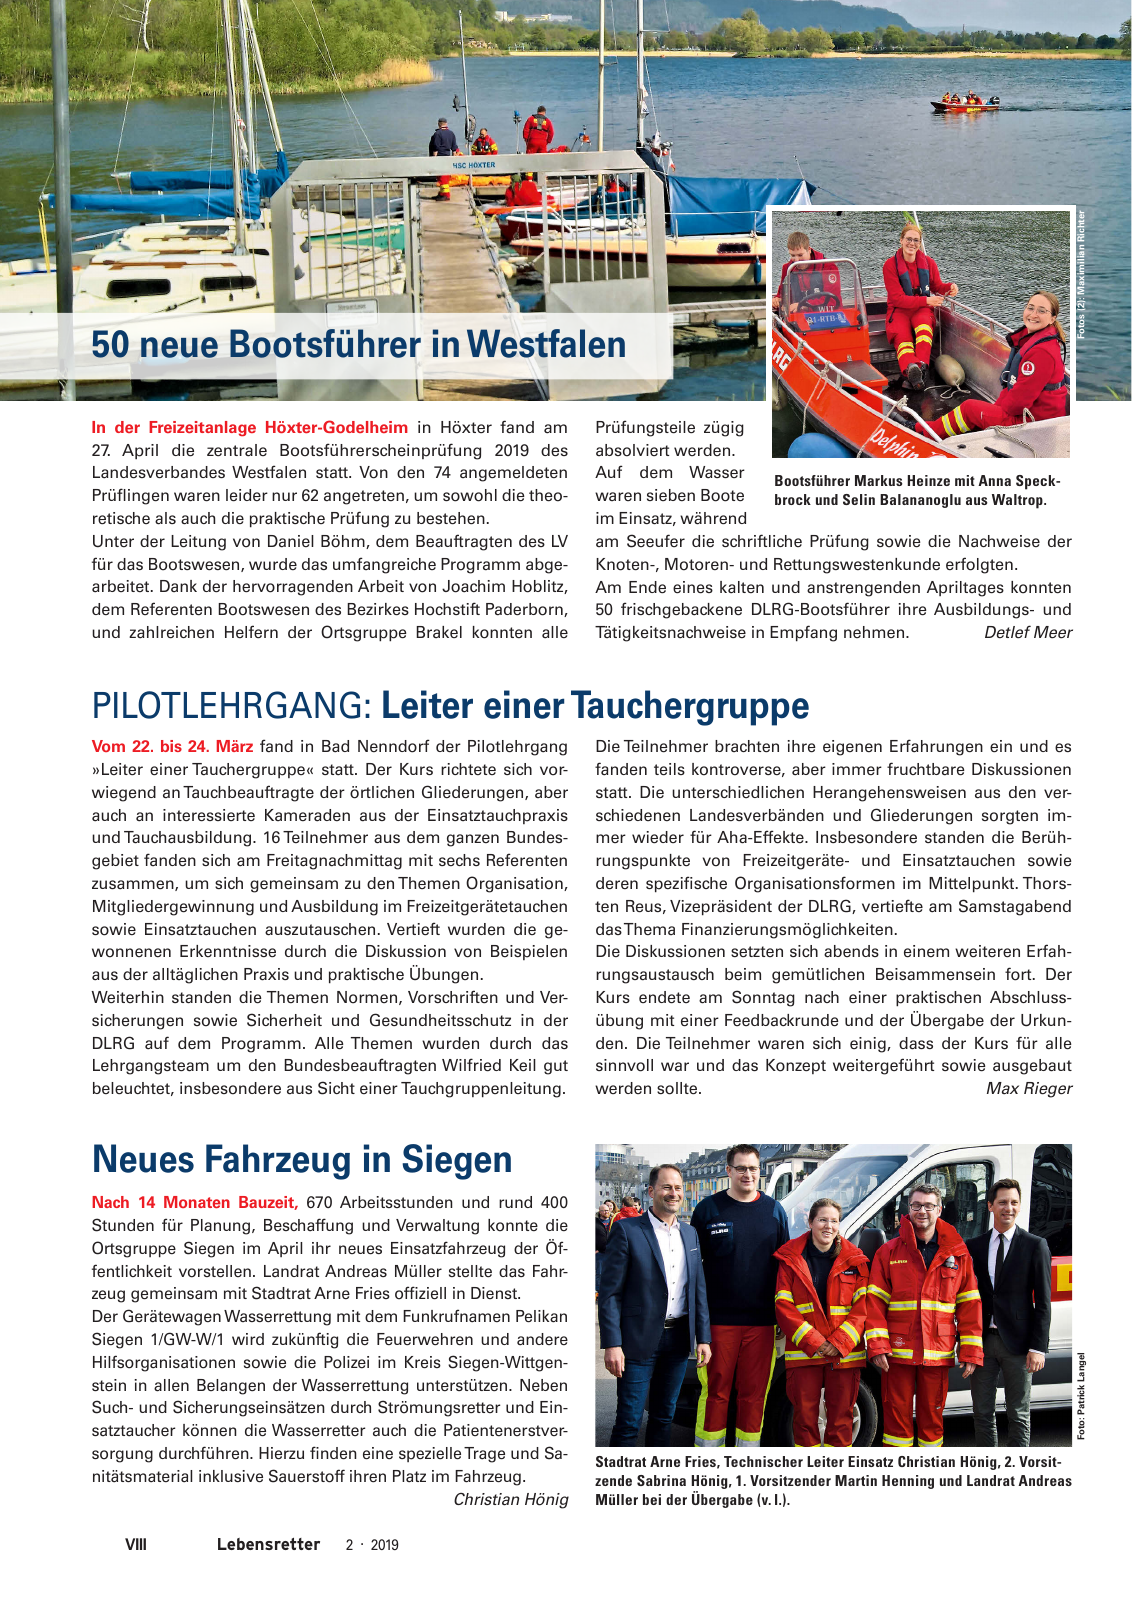 Vorschau Lebensretter 2/2019 - Westfalen Regionalausgabe Seite 10